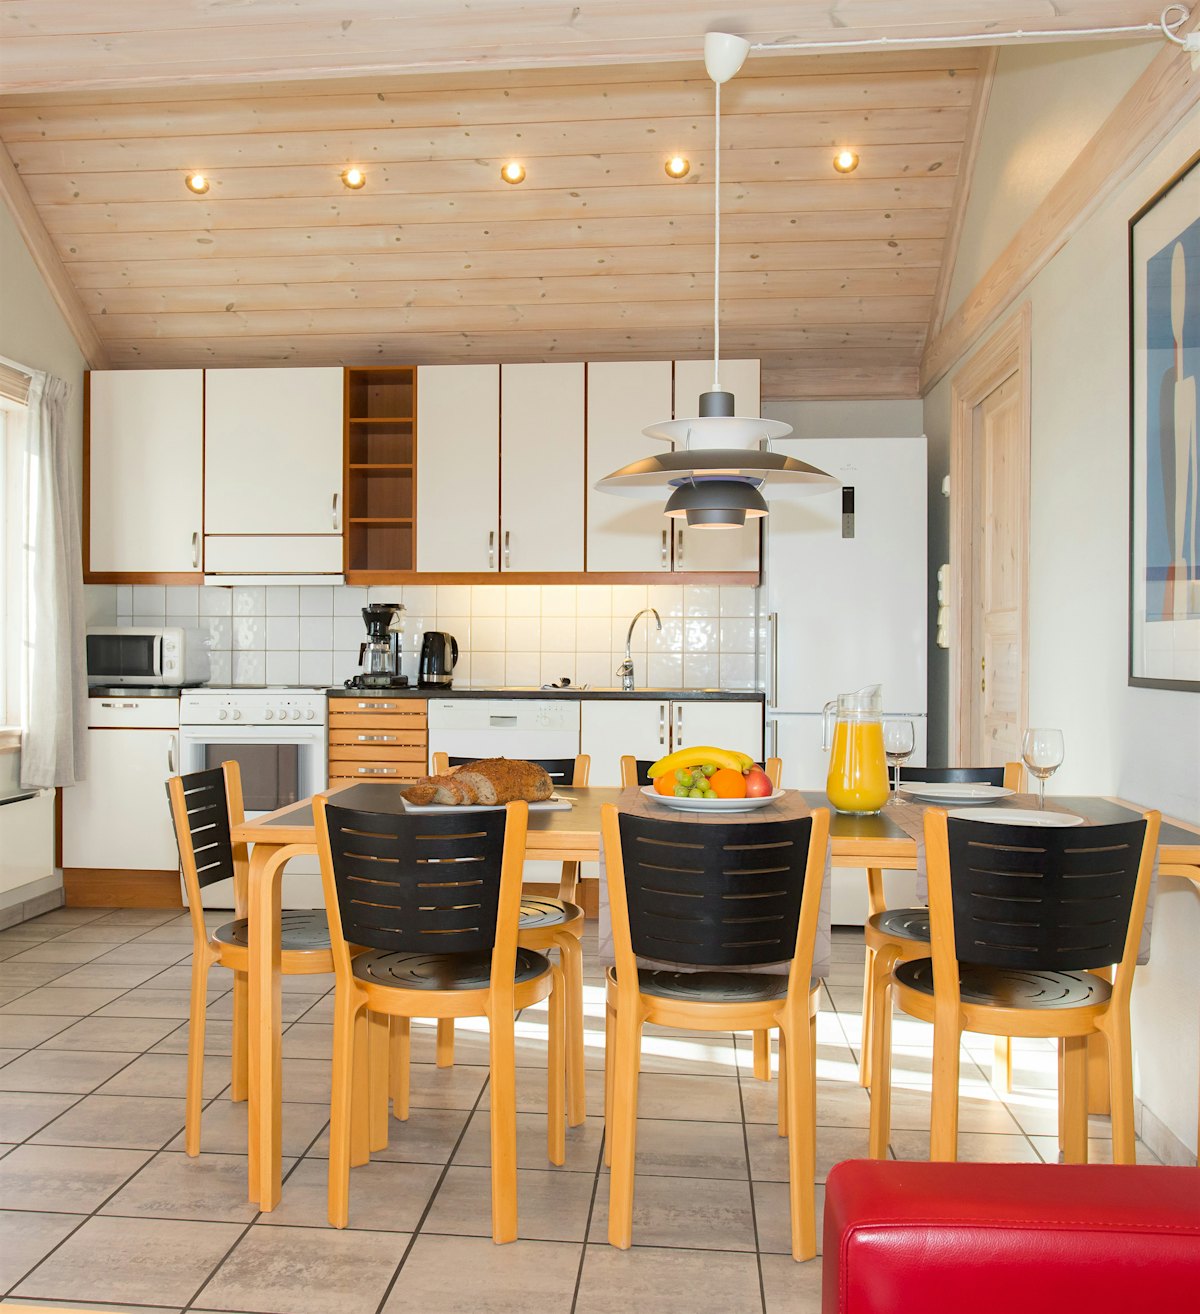 Stort åpent rom med kjøkken og spisebord. Bordet er dekket med fruktfat, brød og drikke. Foto